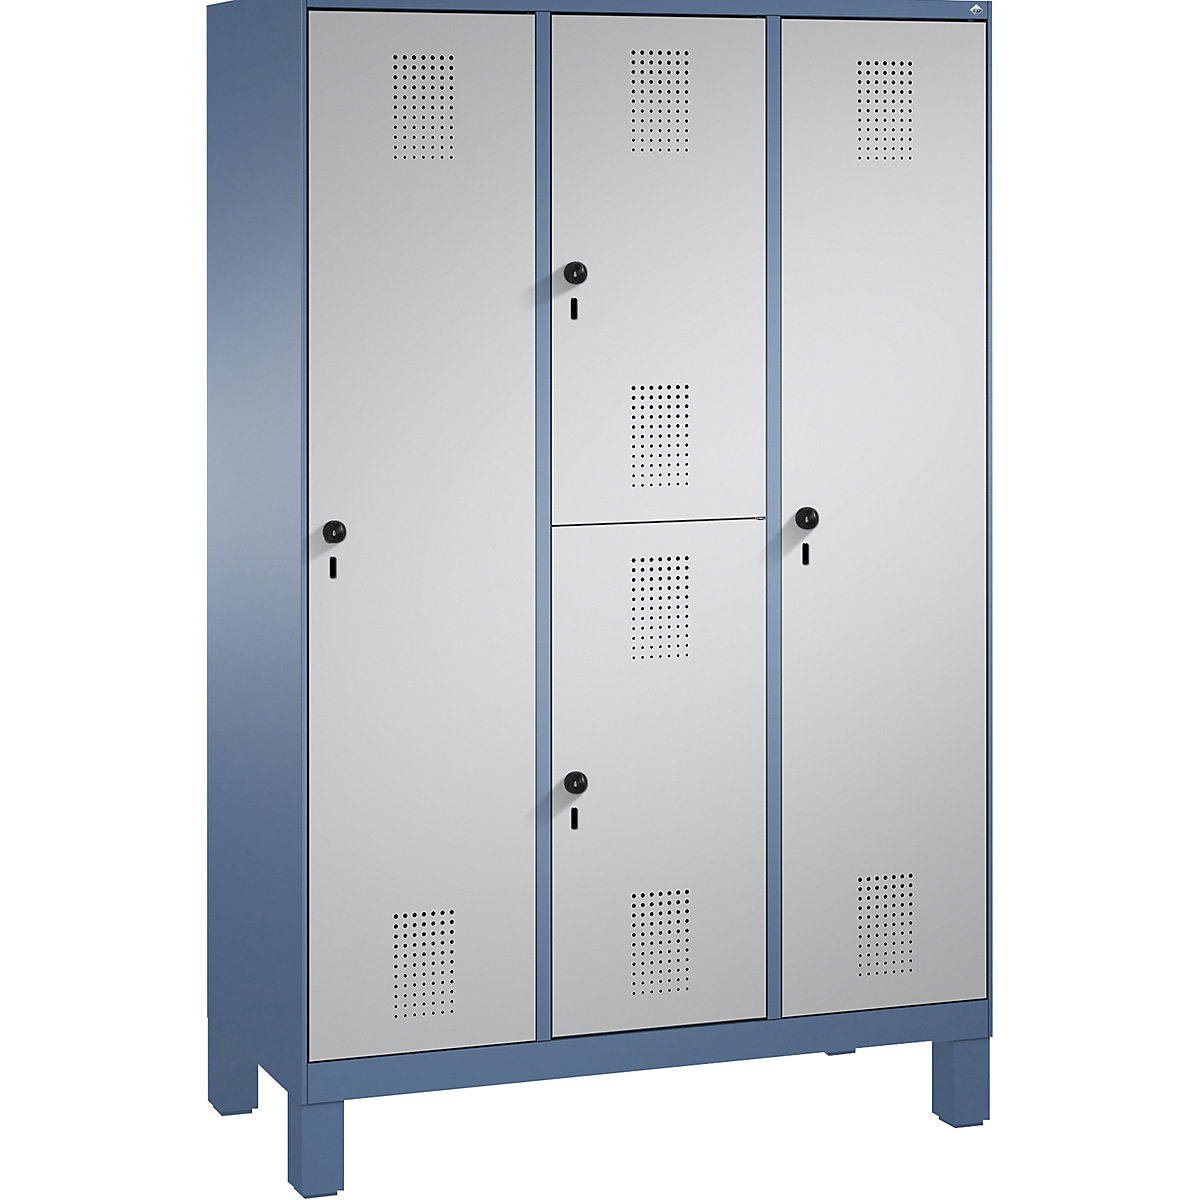 Kombinovaná skříň EVOLO, jednopatrová a dvoupatrová – C+P, 3 oddíly, 4 dveře, šířka oddílu 400 mm, s nohami, modrošedá / bílý hliník-3